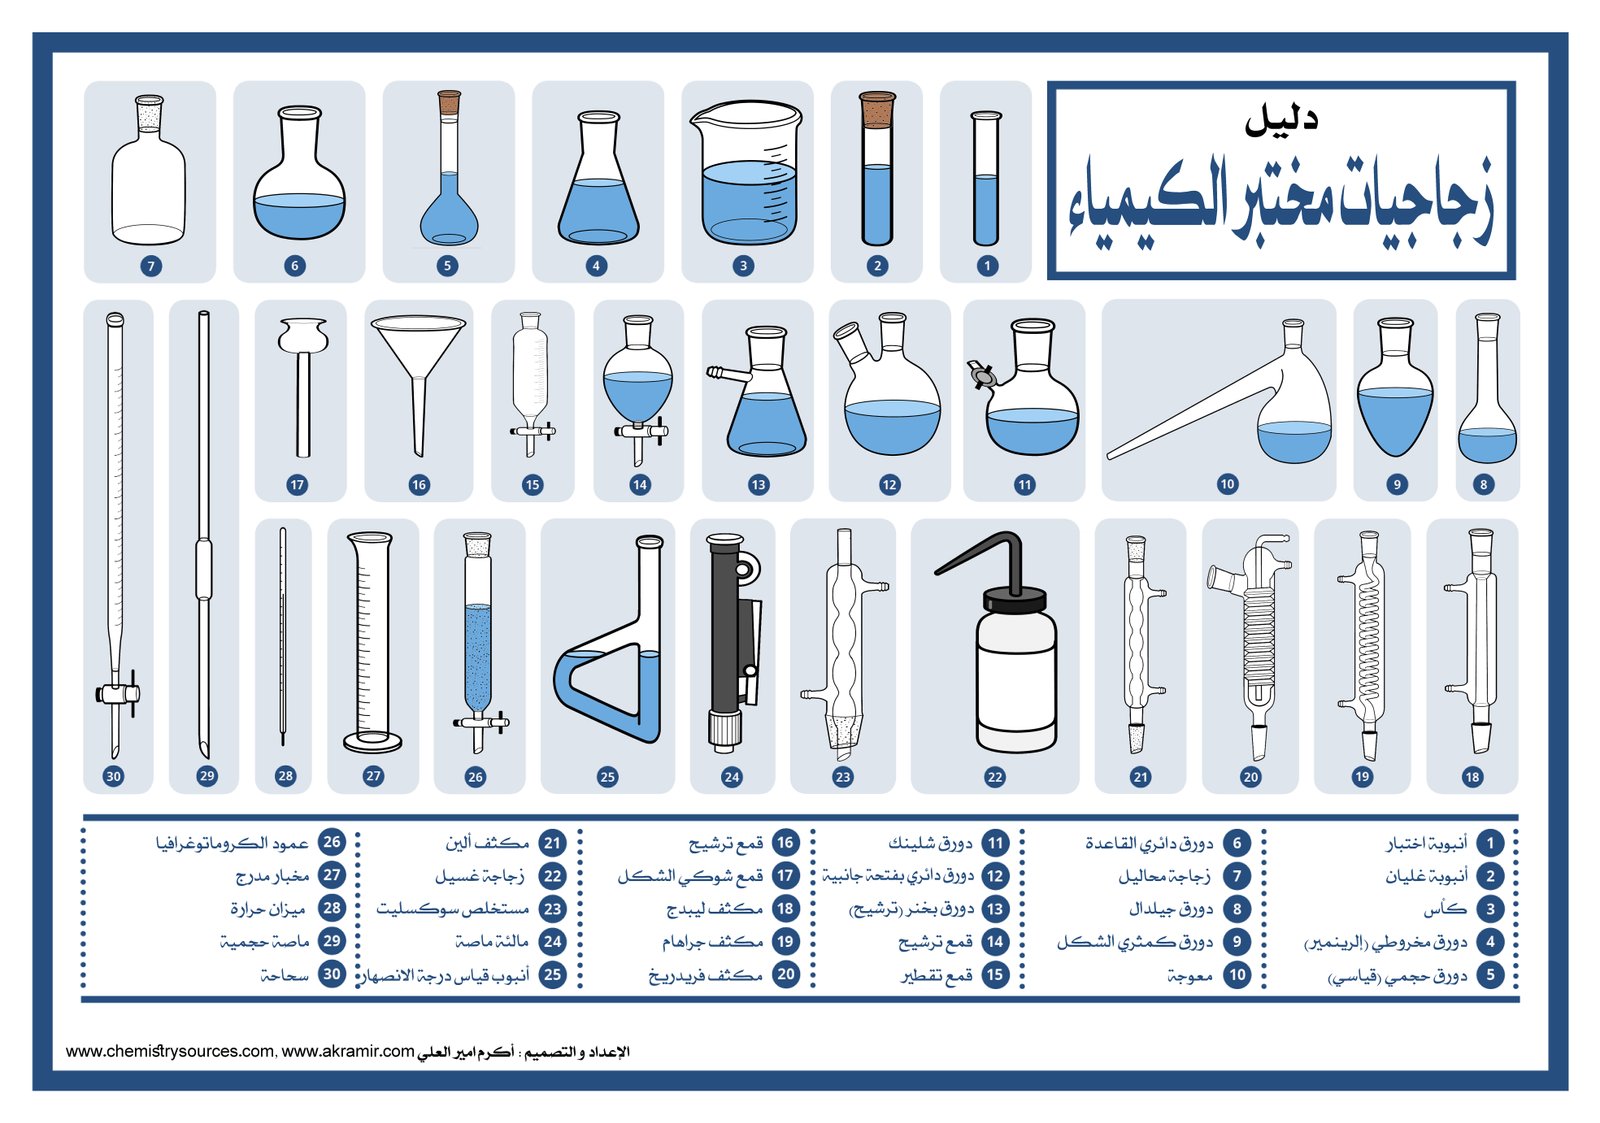 لوحات (بوسترات) كيميائية (11) - دليل زجاجيات مختبر الكيمياء